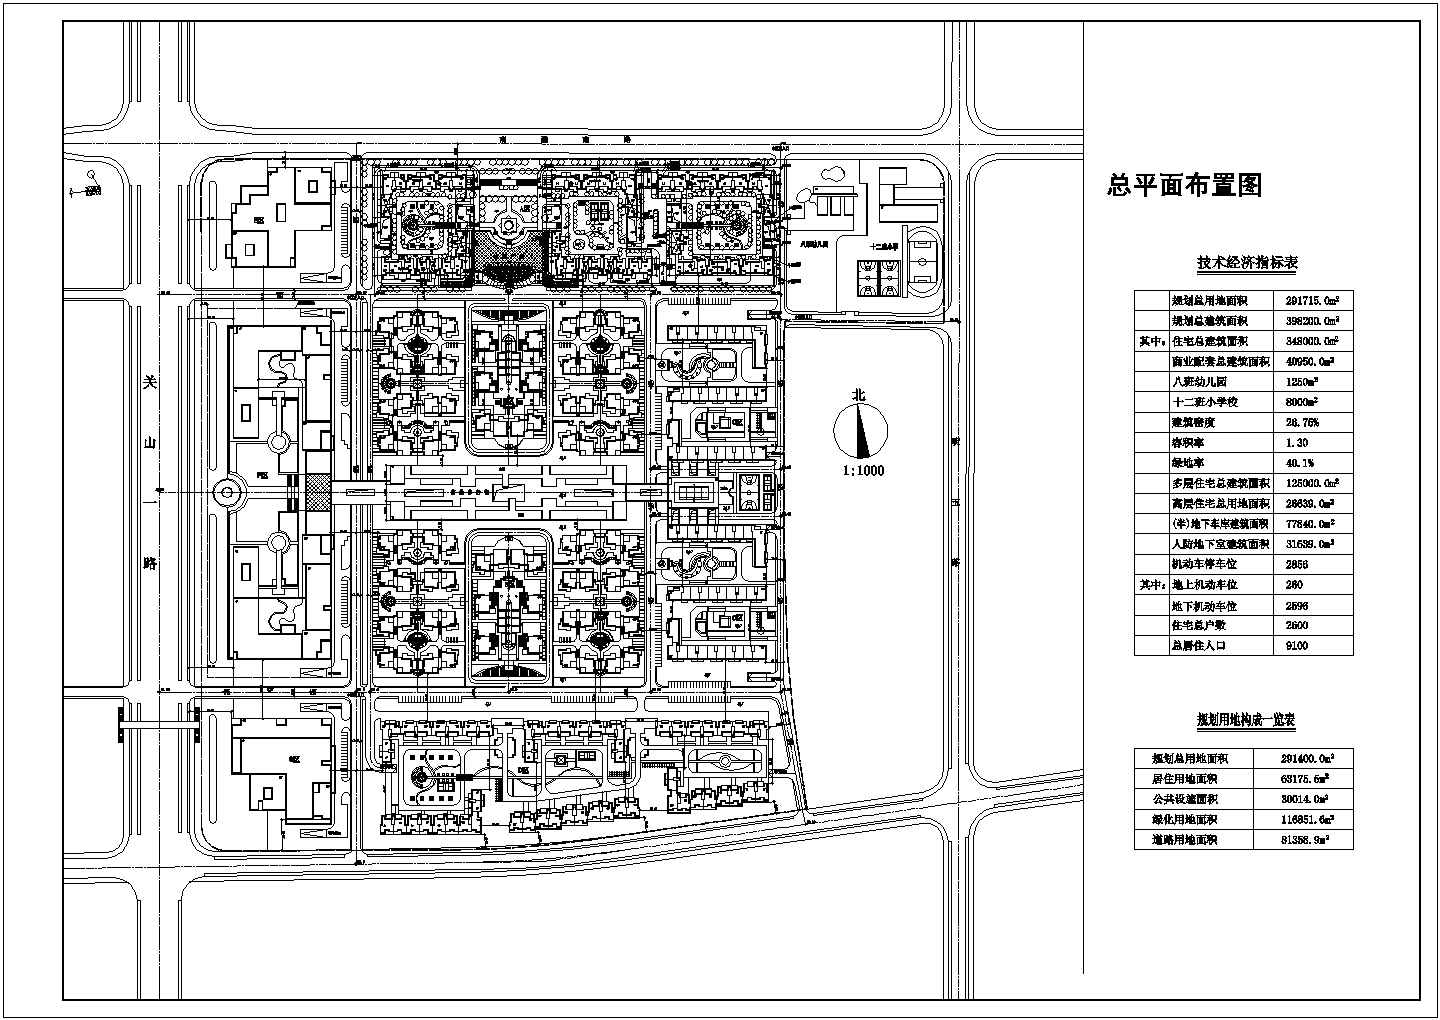 【武汉市】关山一路景观建筑总平面布置图